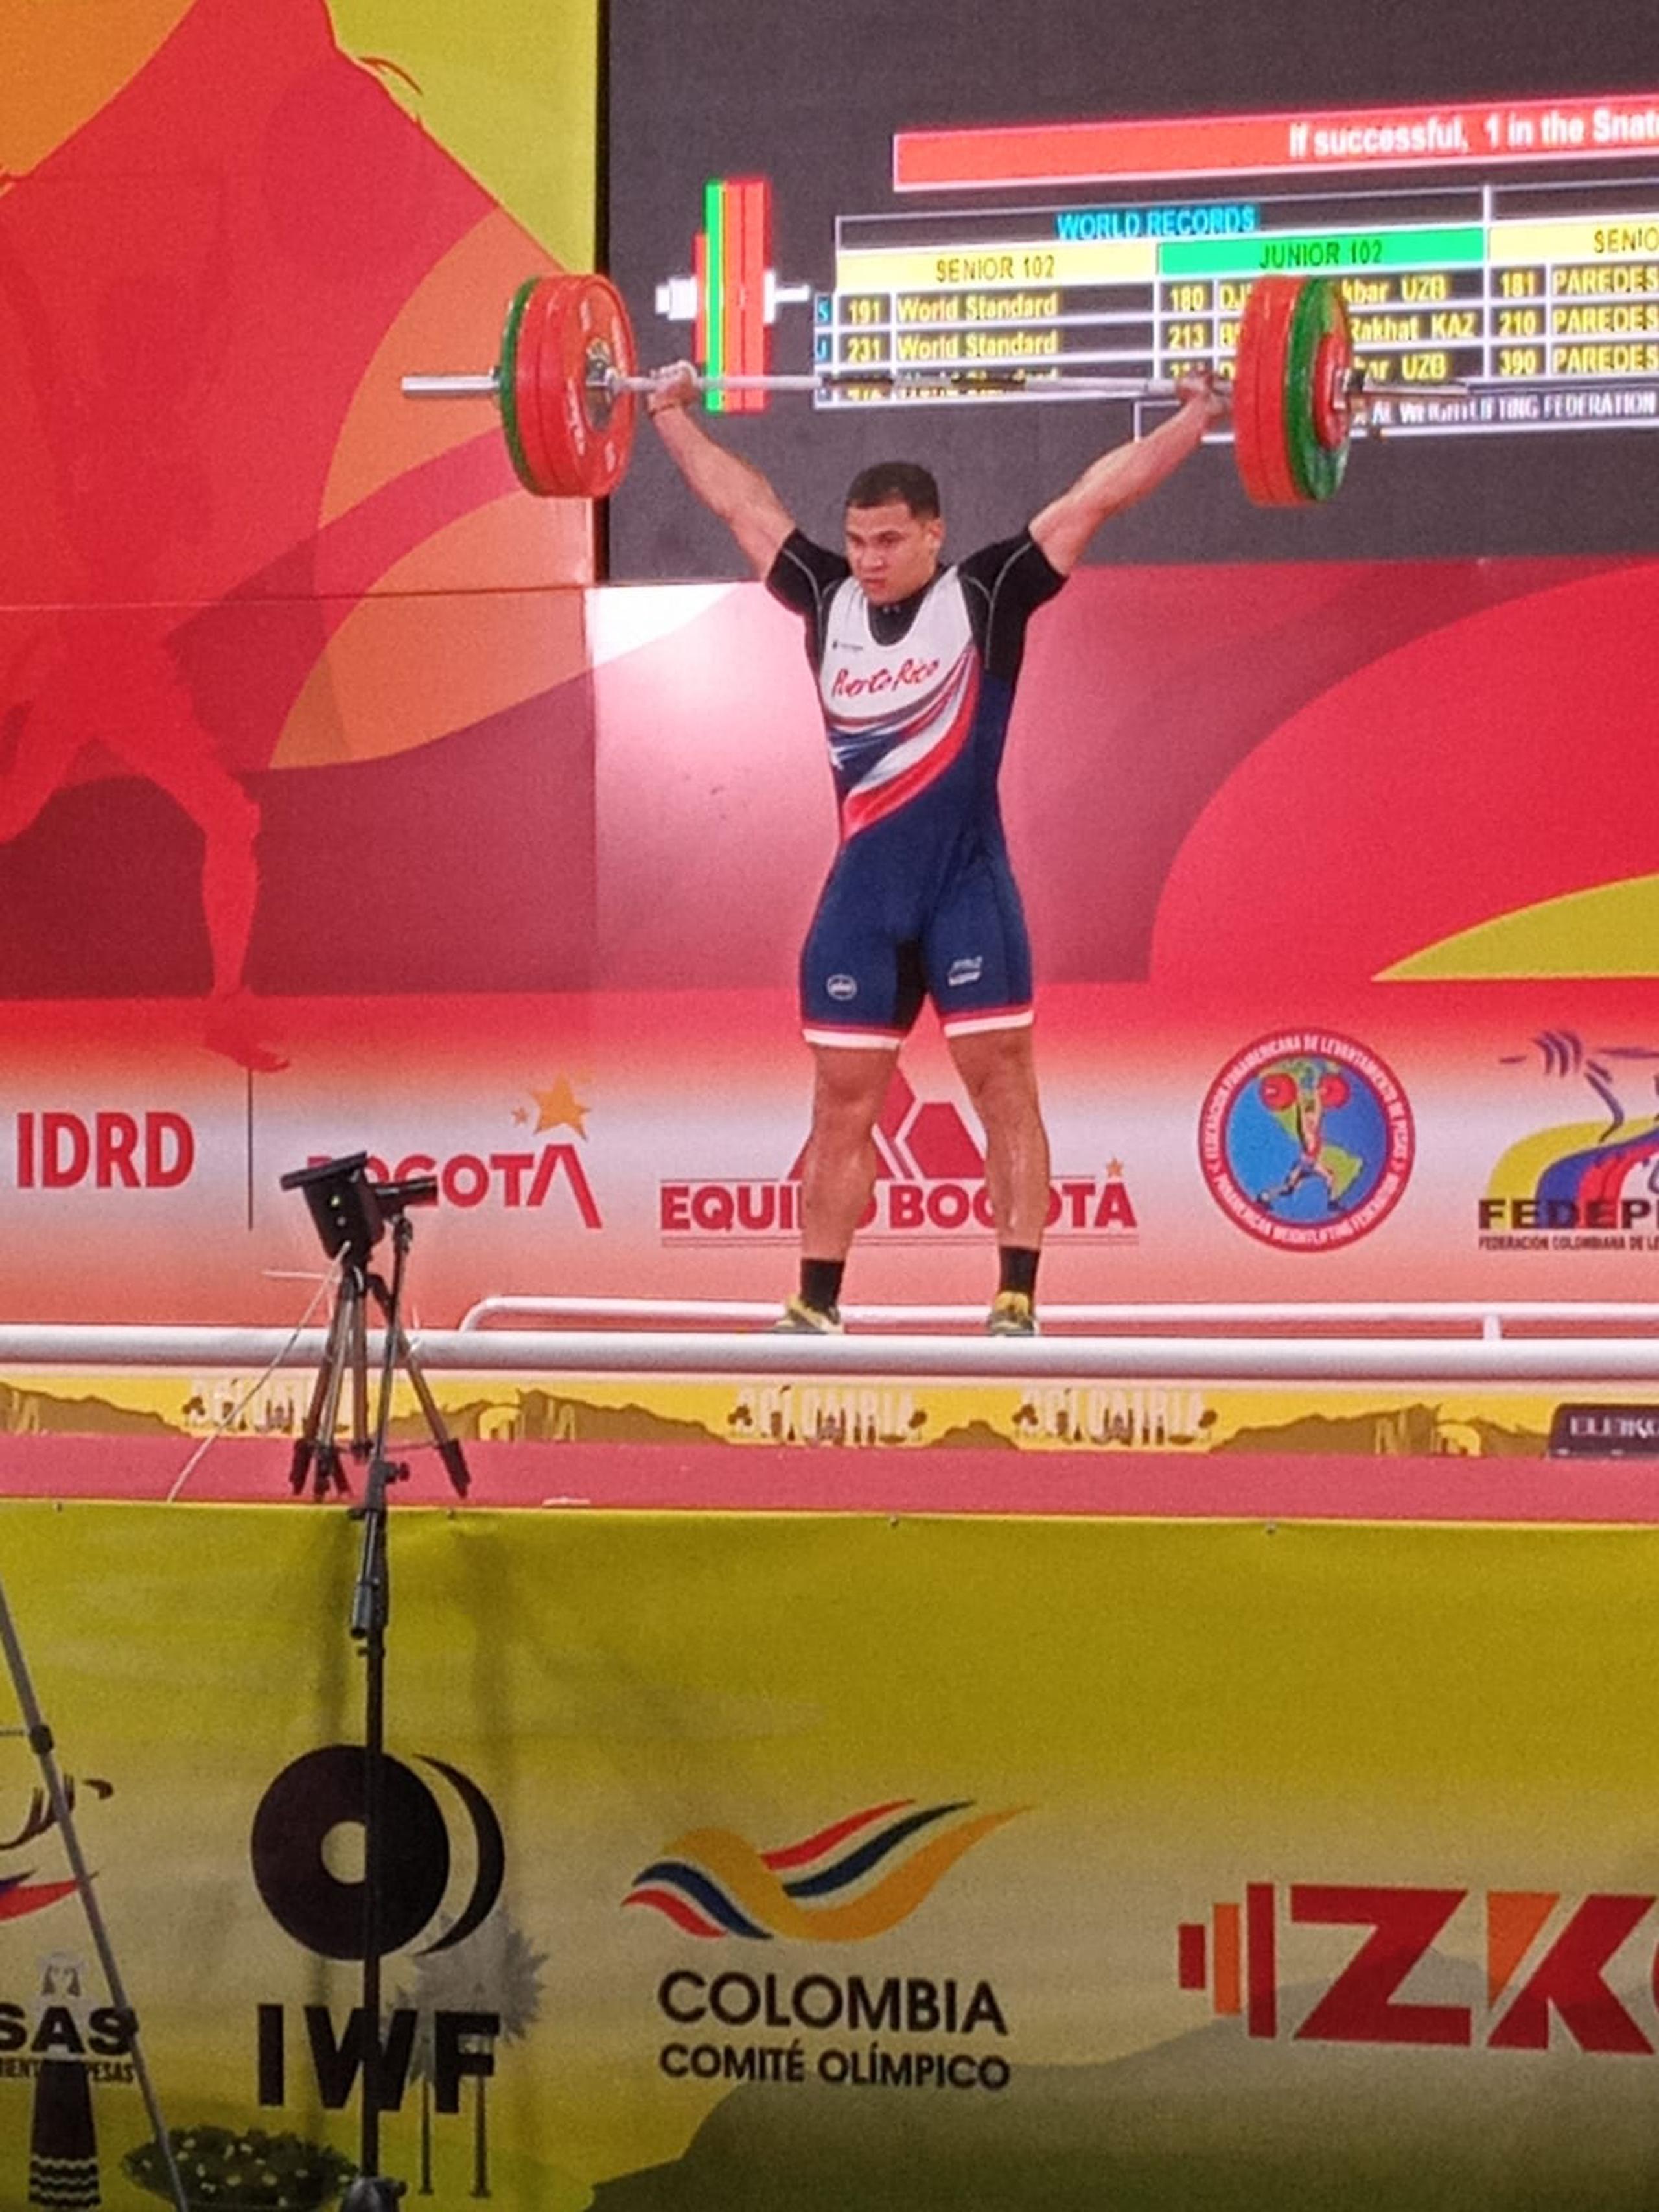 Luis Lamenza lganó la medalla de bronce en los 102 kilogramos de peso al terminar tercero en la suma de la puntuación de arranque y envión en el pasado campeonato Panamericano celebrado en Bogotá, Colombia.